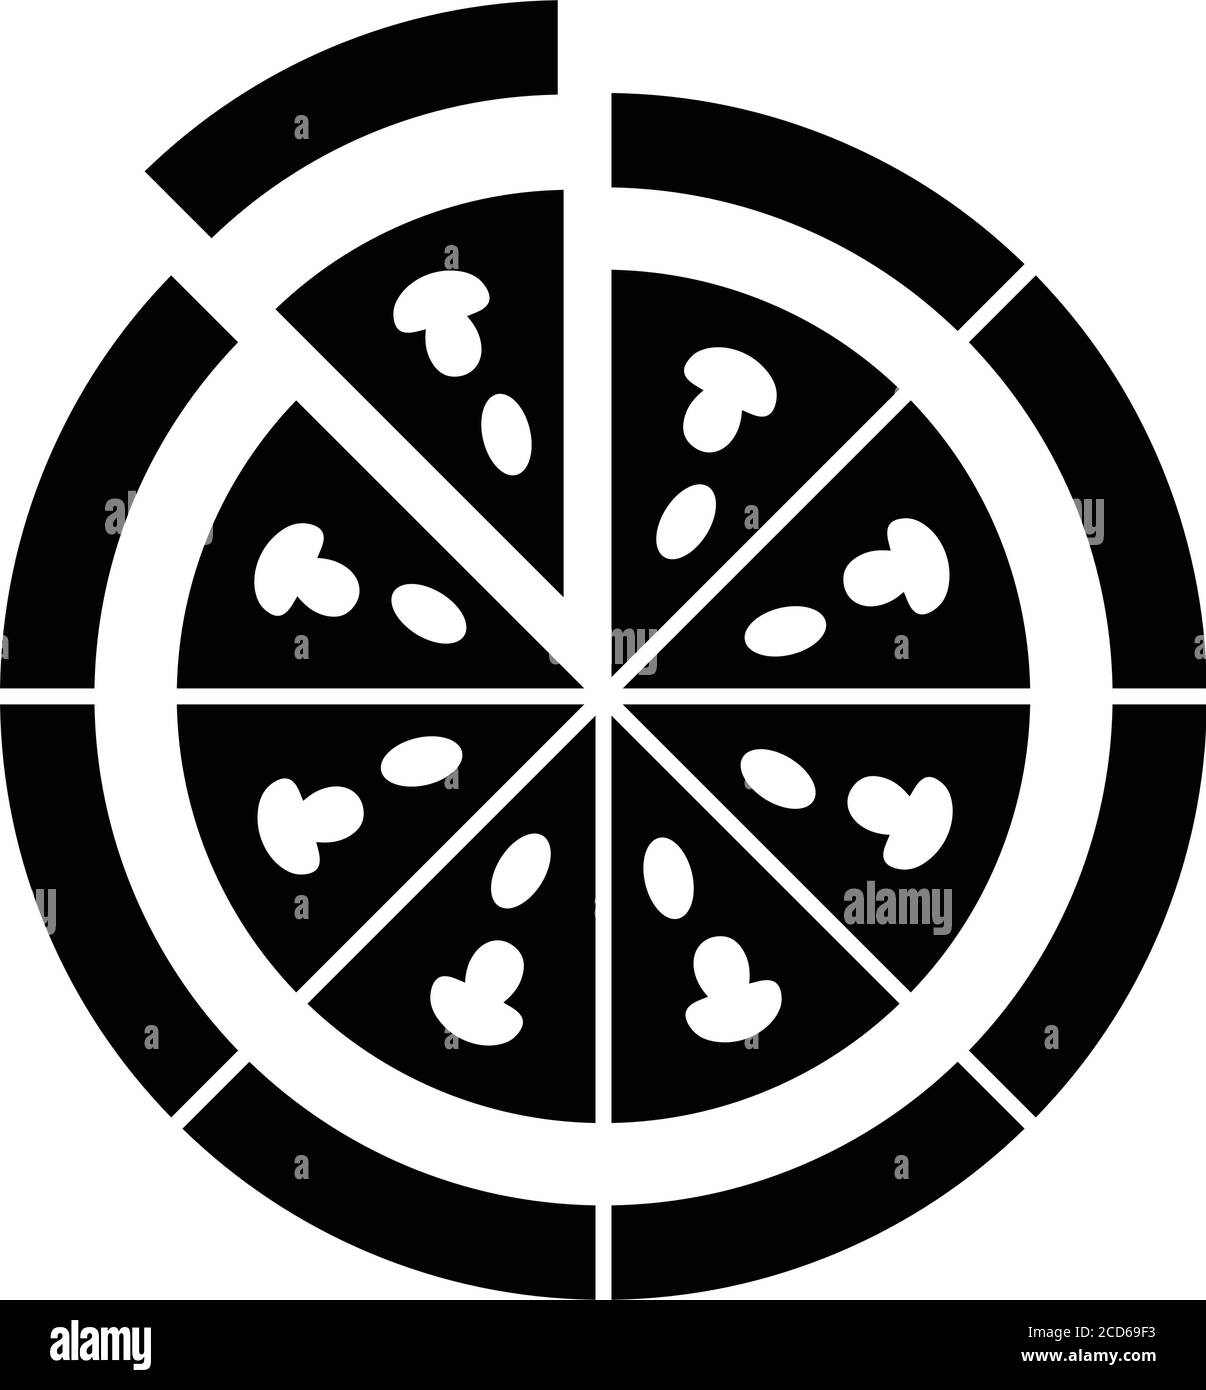 Essen, Pizza Slice Icon - perfekt für die Gestaltung und Entwicklung von Websites, gedruckten Dateien und Präsentationen, Werbematerialien, Illustrationen o Stock Vektor